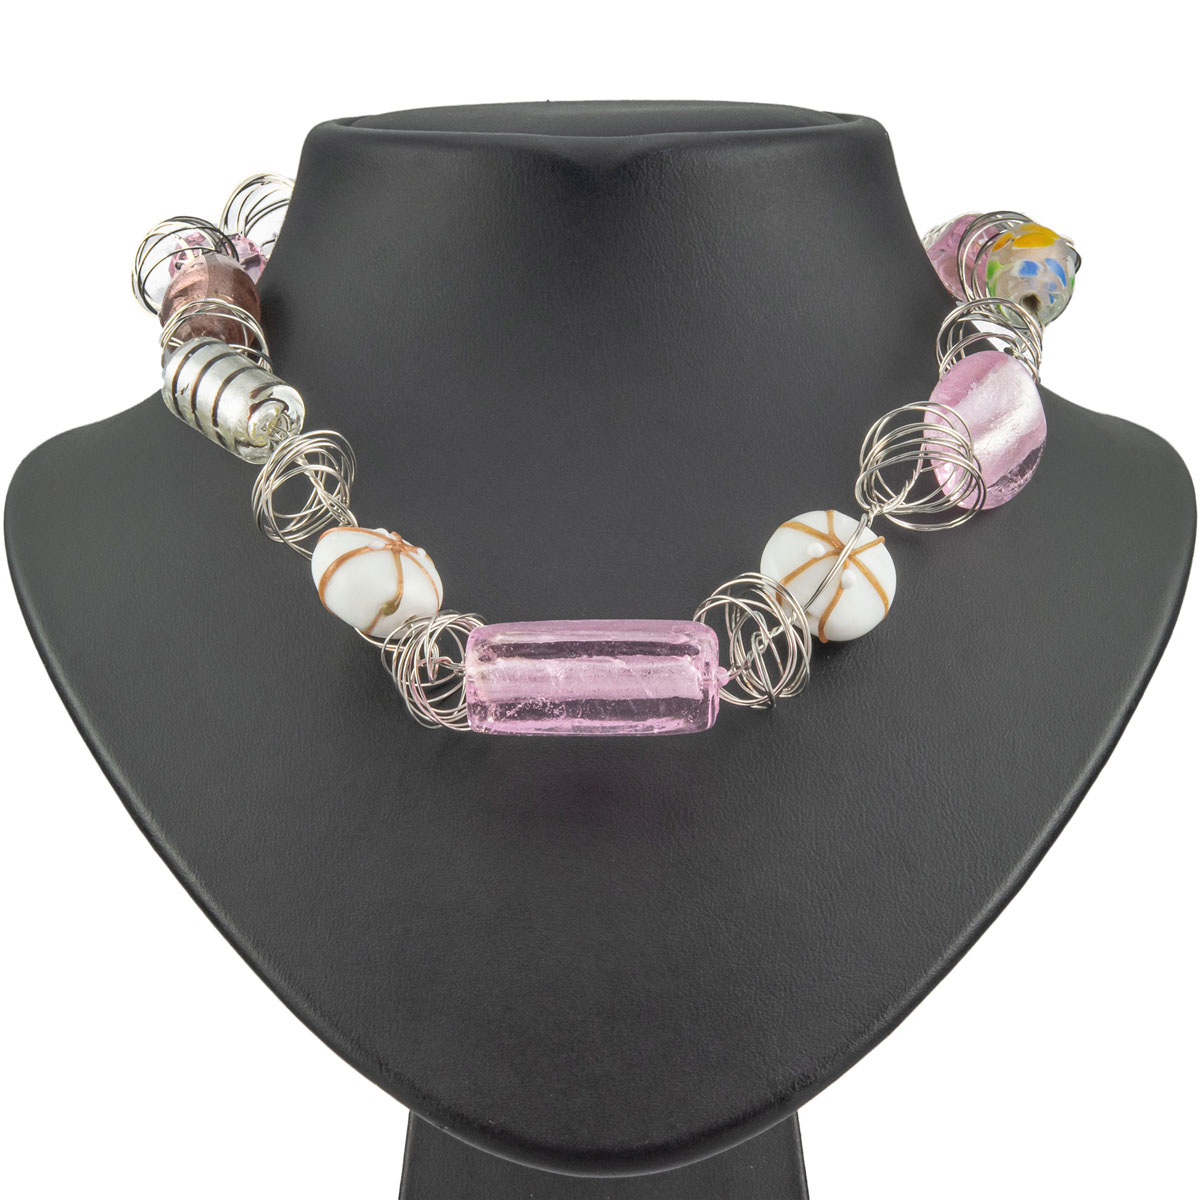 K.V. Fuchs Design Schmuck Damen Halskette in silber mit gewickeltem Draht und Schmucksteinen in pink, weiß »K-3502«